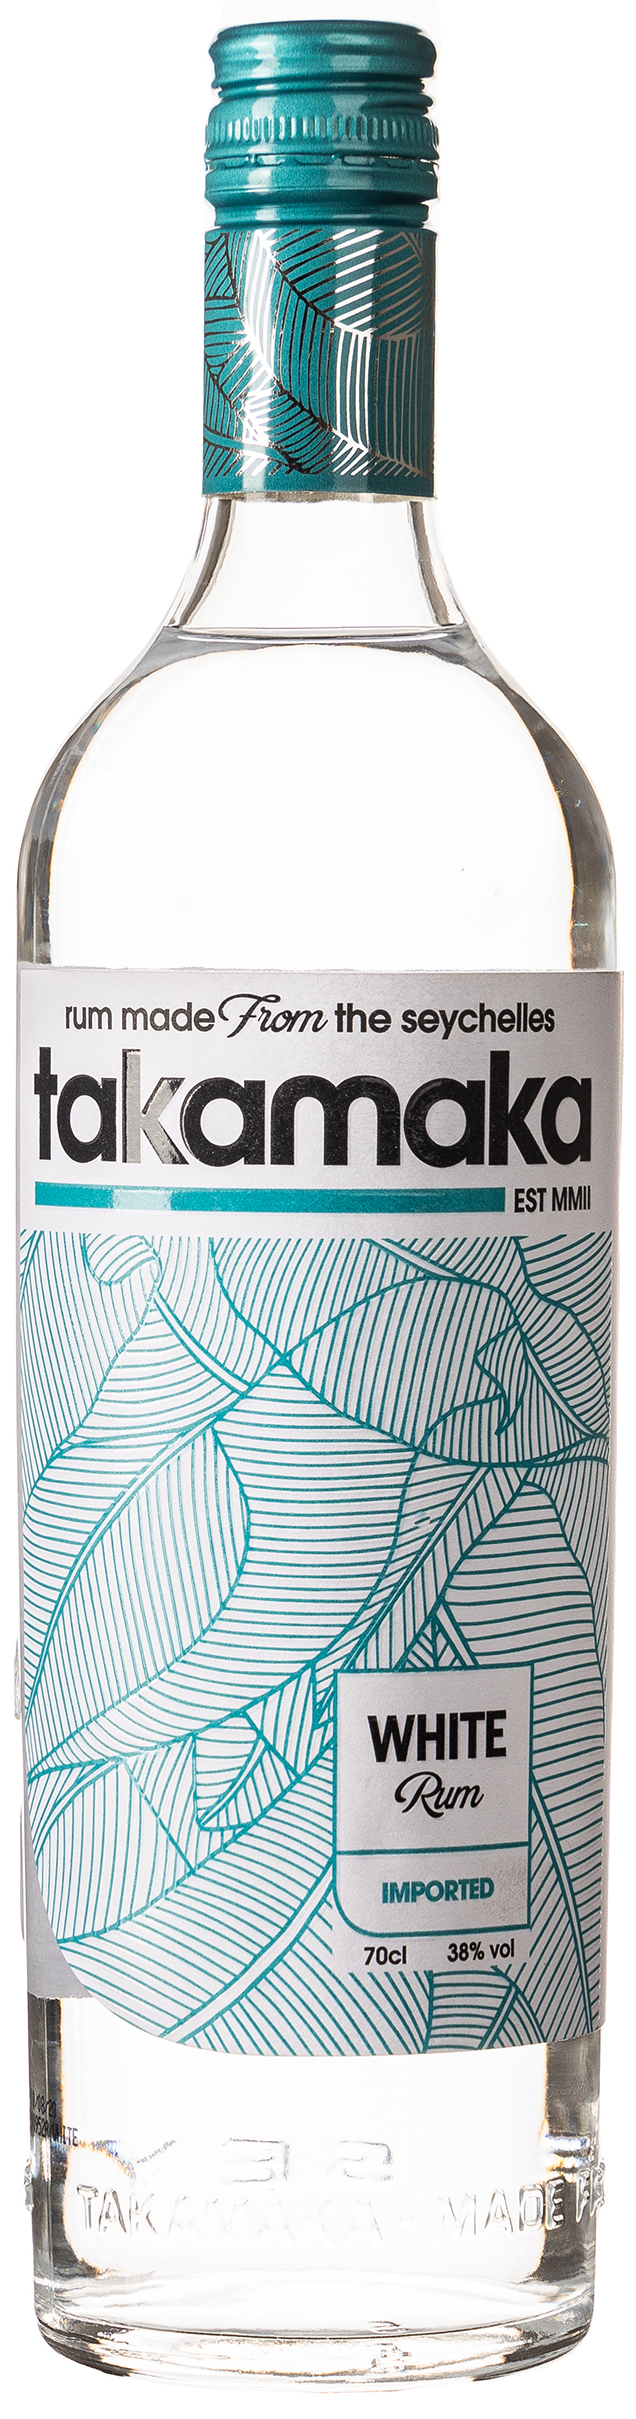 Takamaka White Rum 38% vol. 0,7L